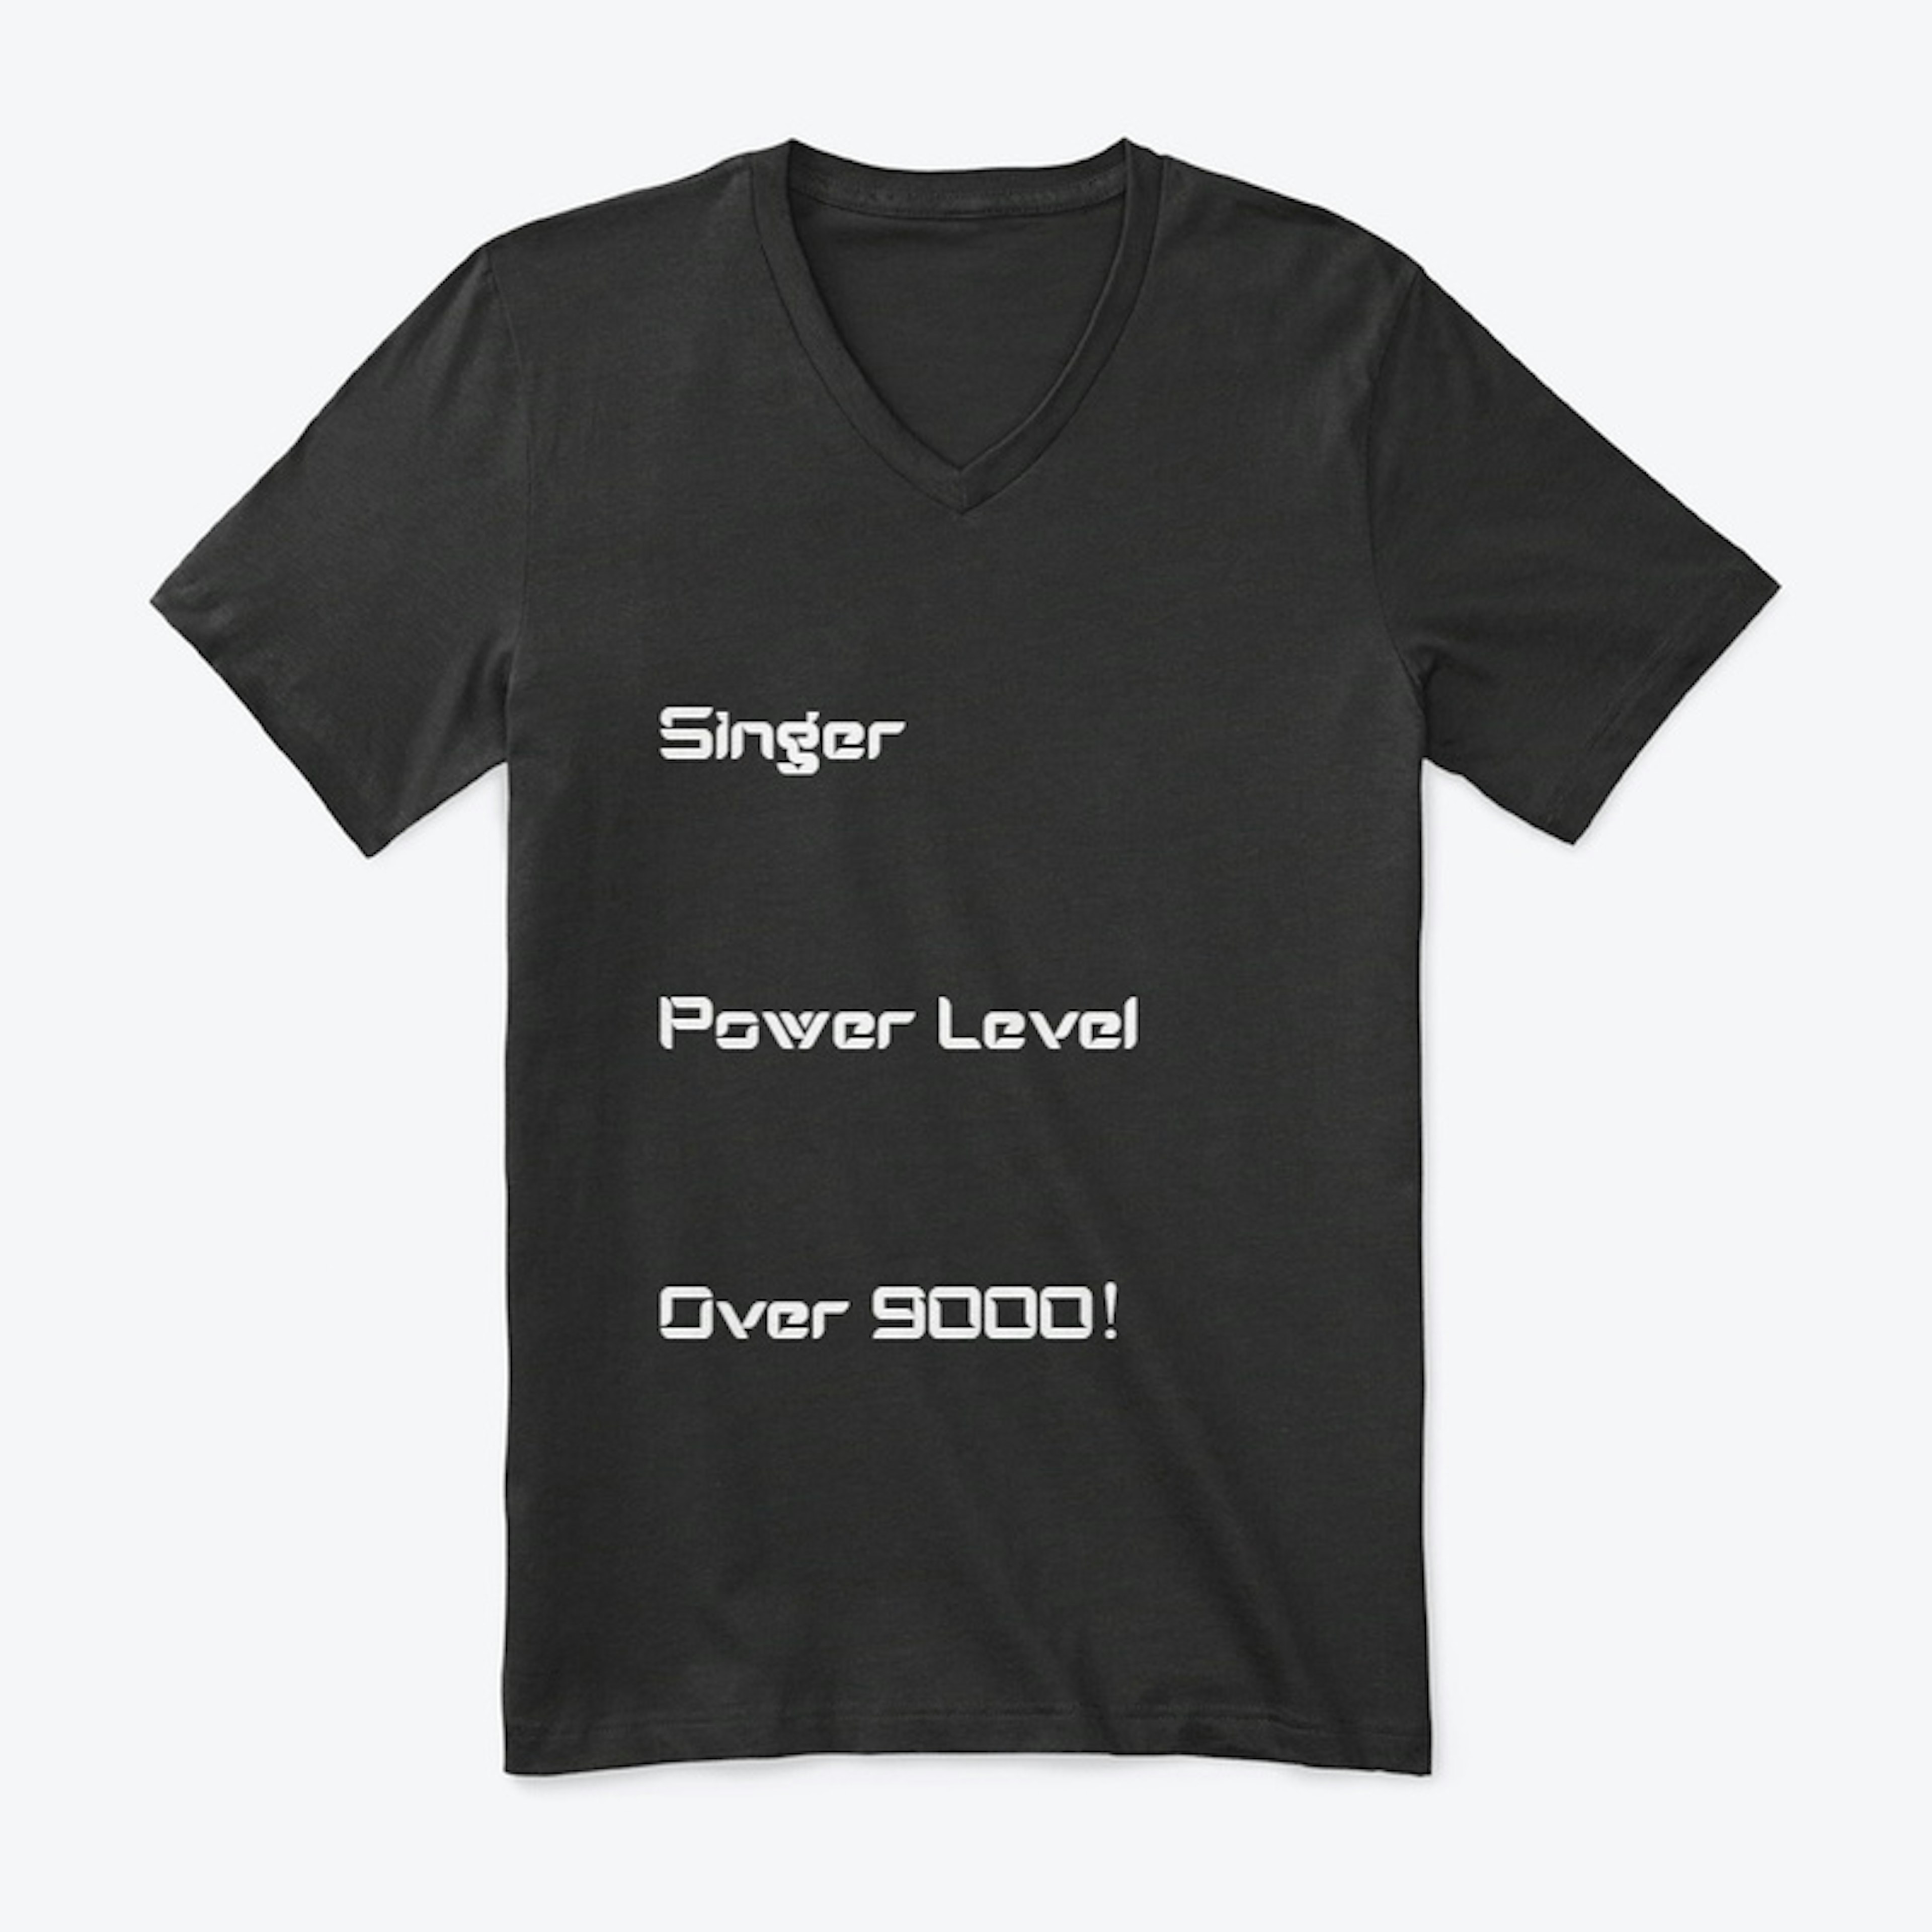 Singer power level over 9000